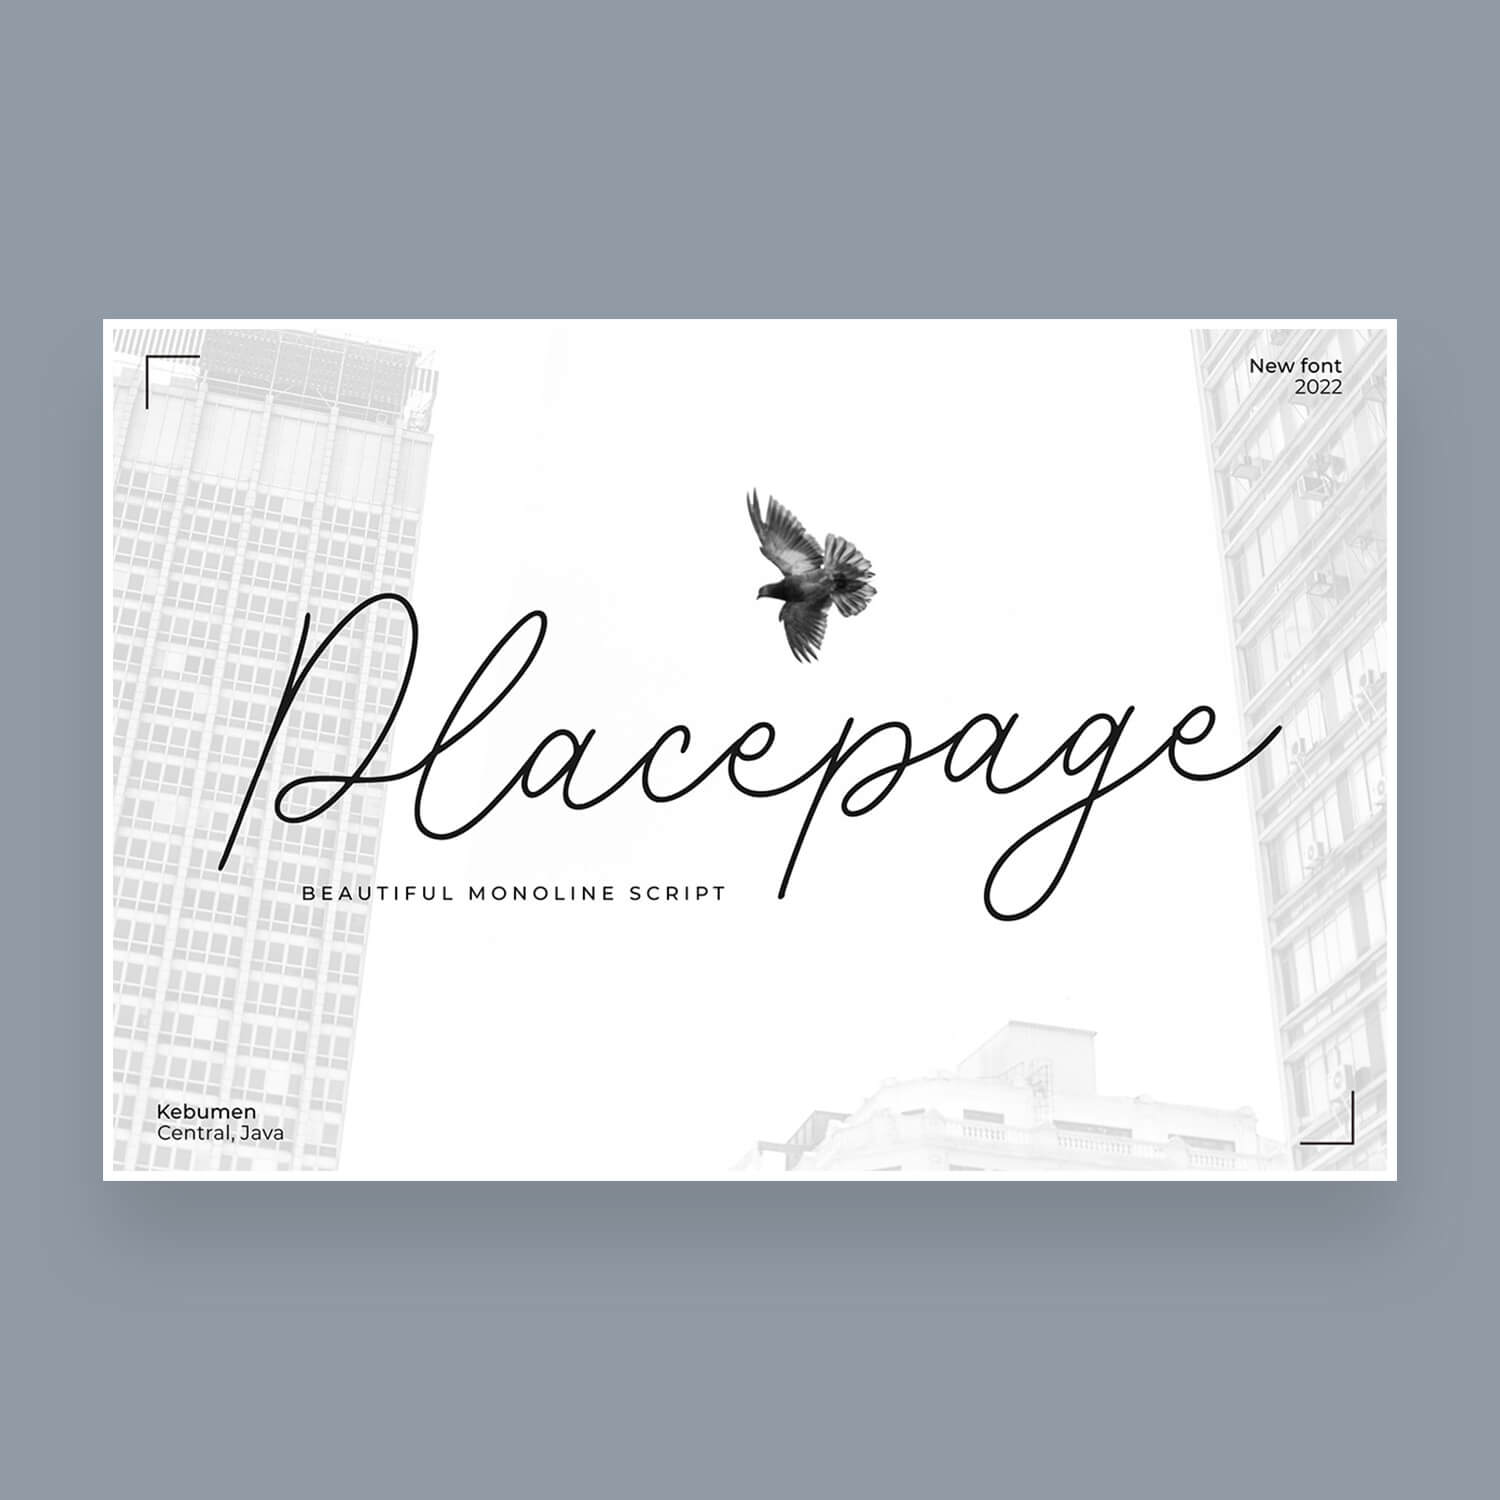 placepage a beautiful monoline script font cover image.